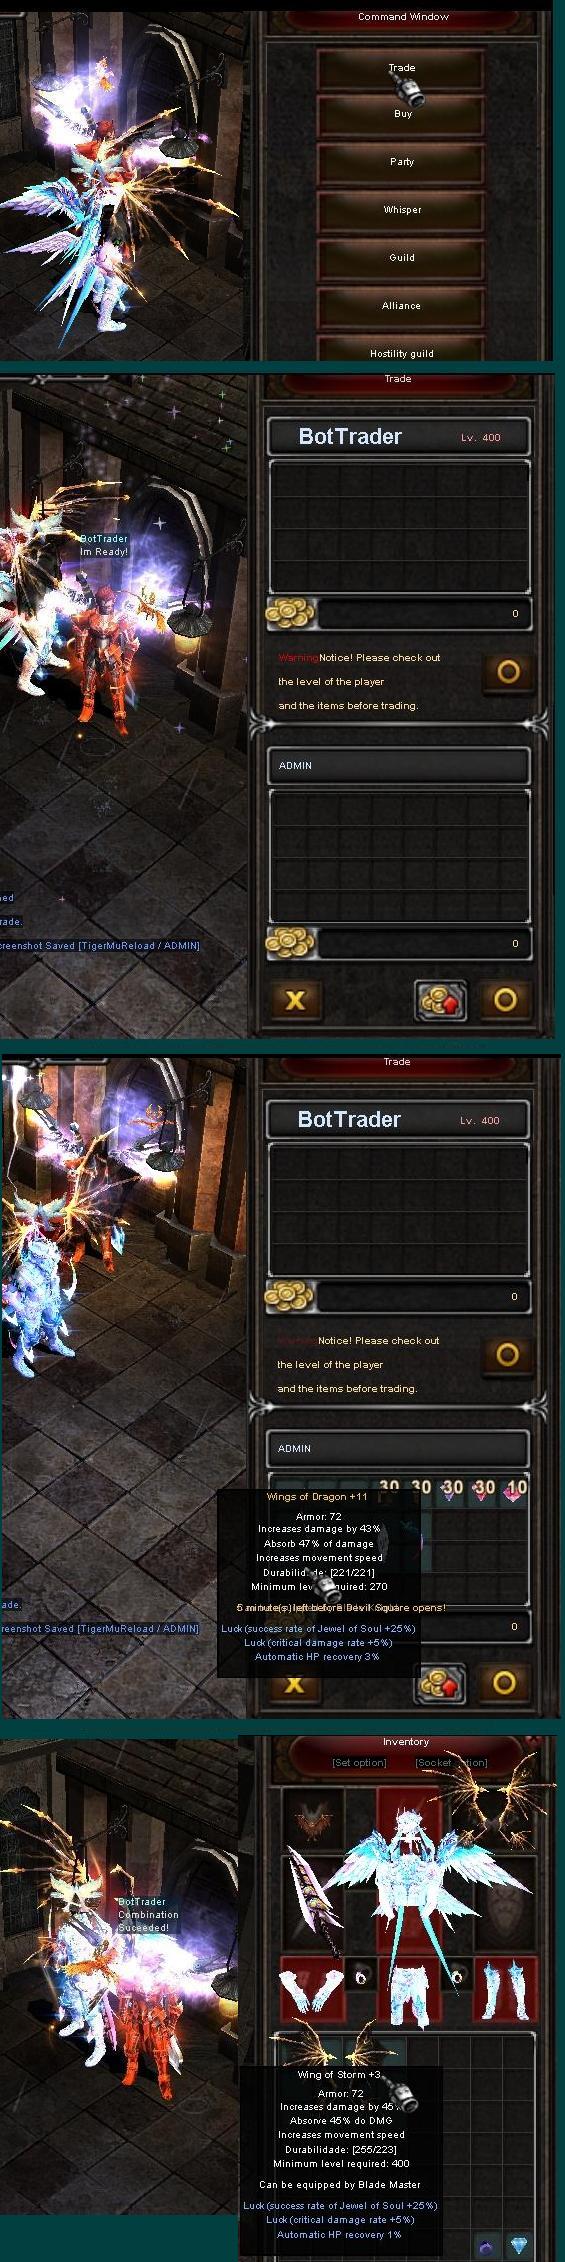 Bot Trader (solo usuarios VIP) Dk10